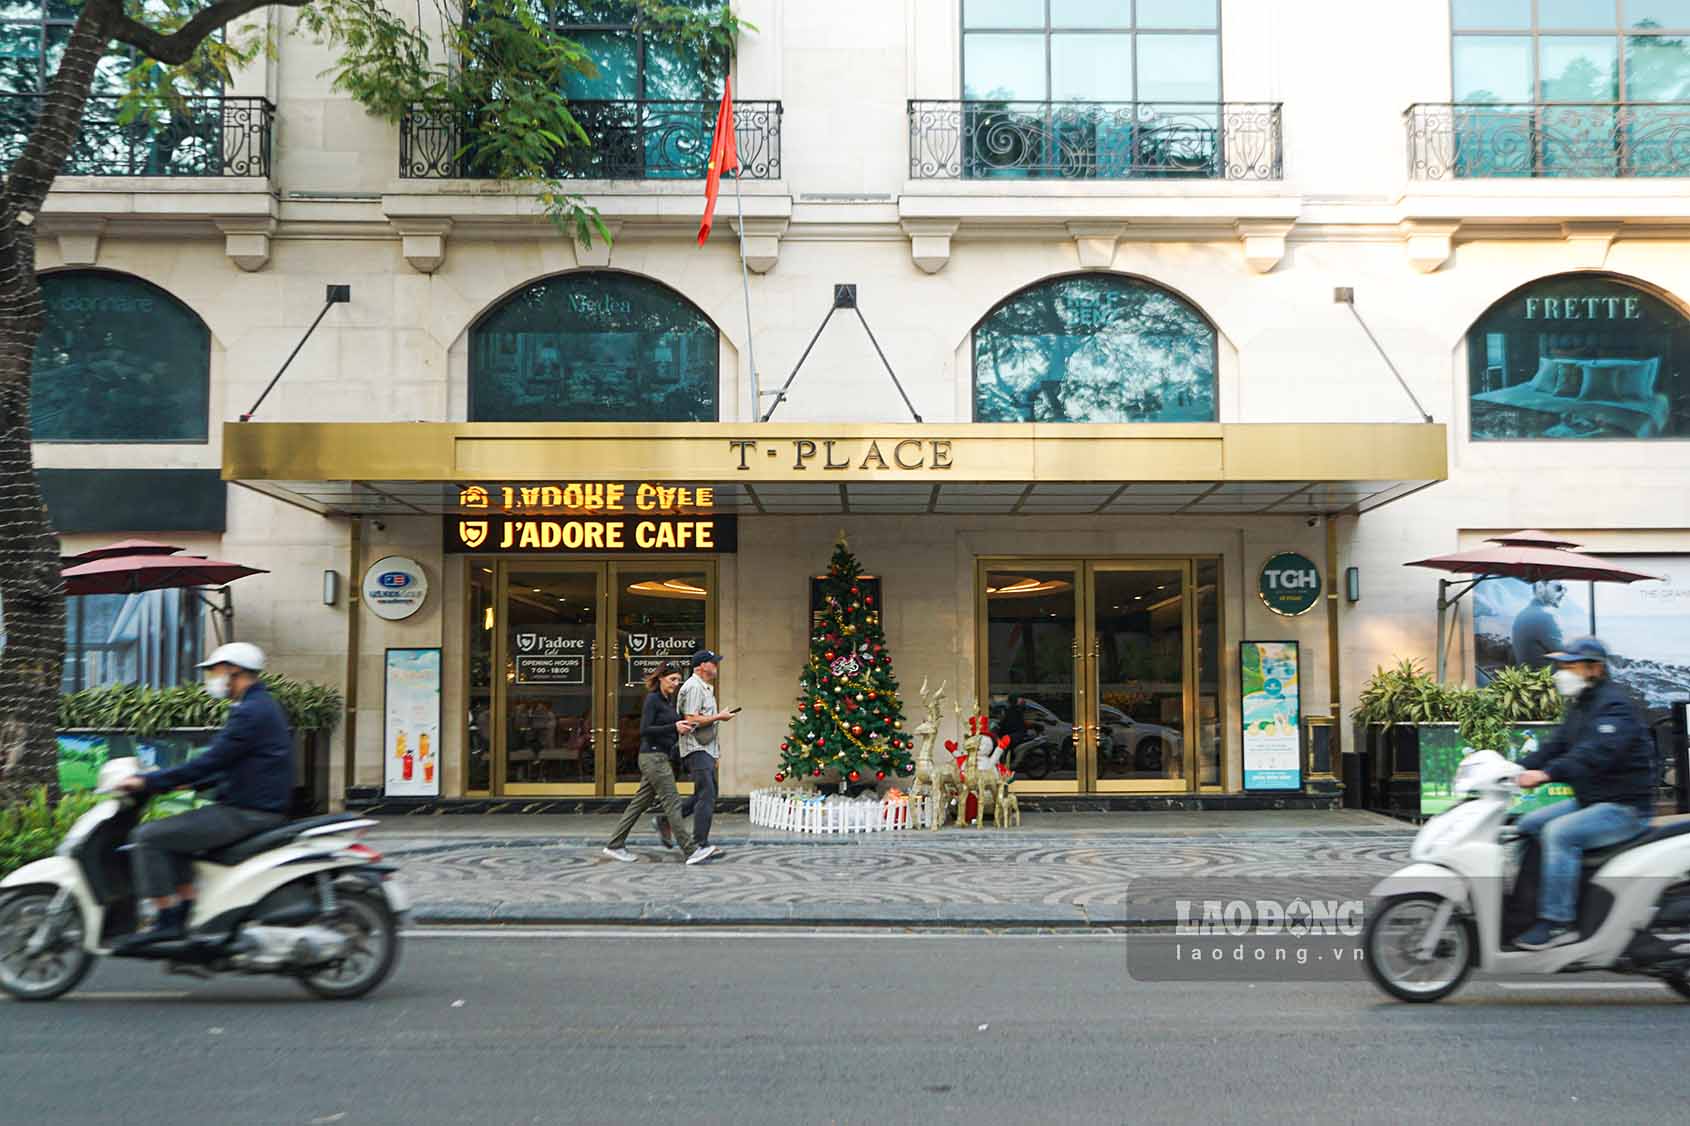 Cũng nằm trên phố Lý Thường Kiệt, đoạn vỉa hè nằm sát tòa nhà số 30A Lý Thường Kiệt được quận Hoàn Kiếm cho thuê làm điểm bán cà phê.